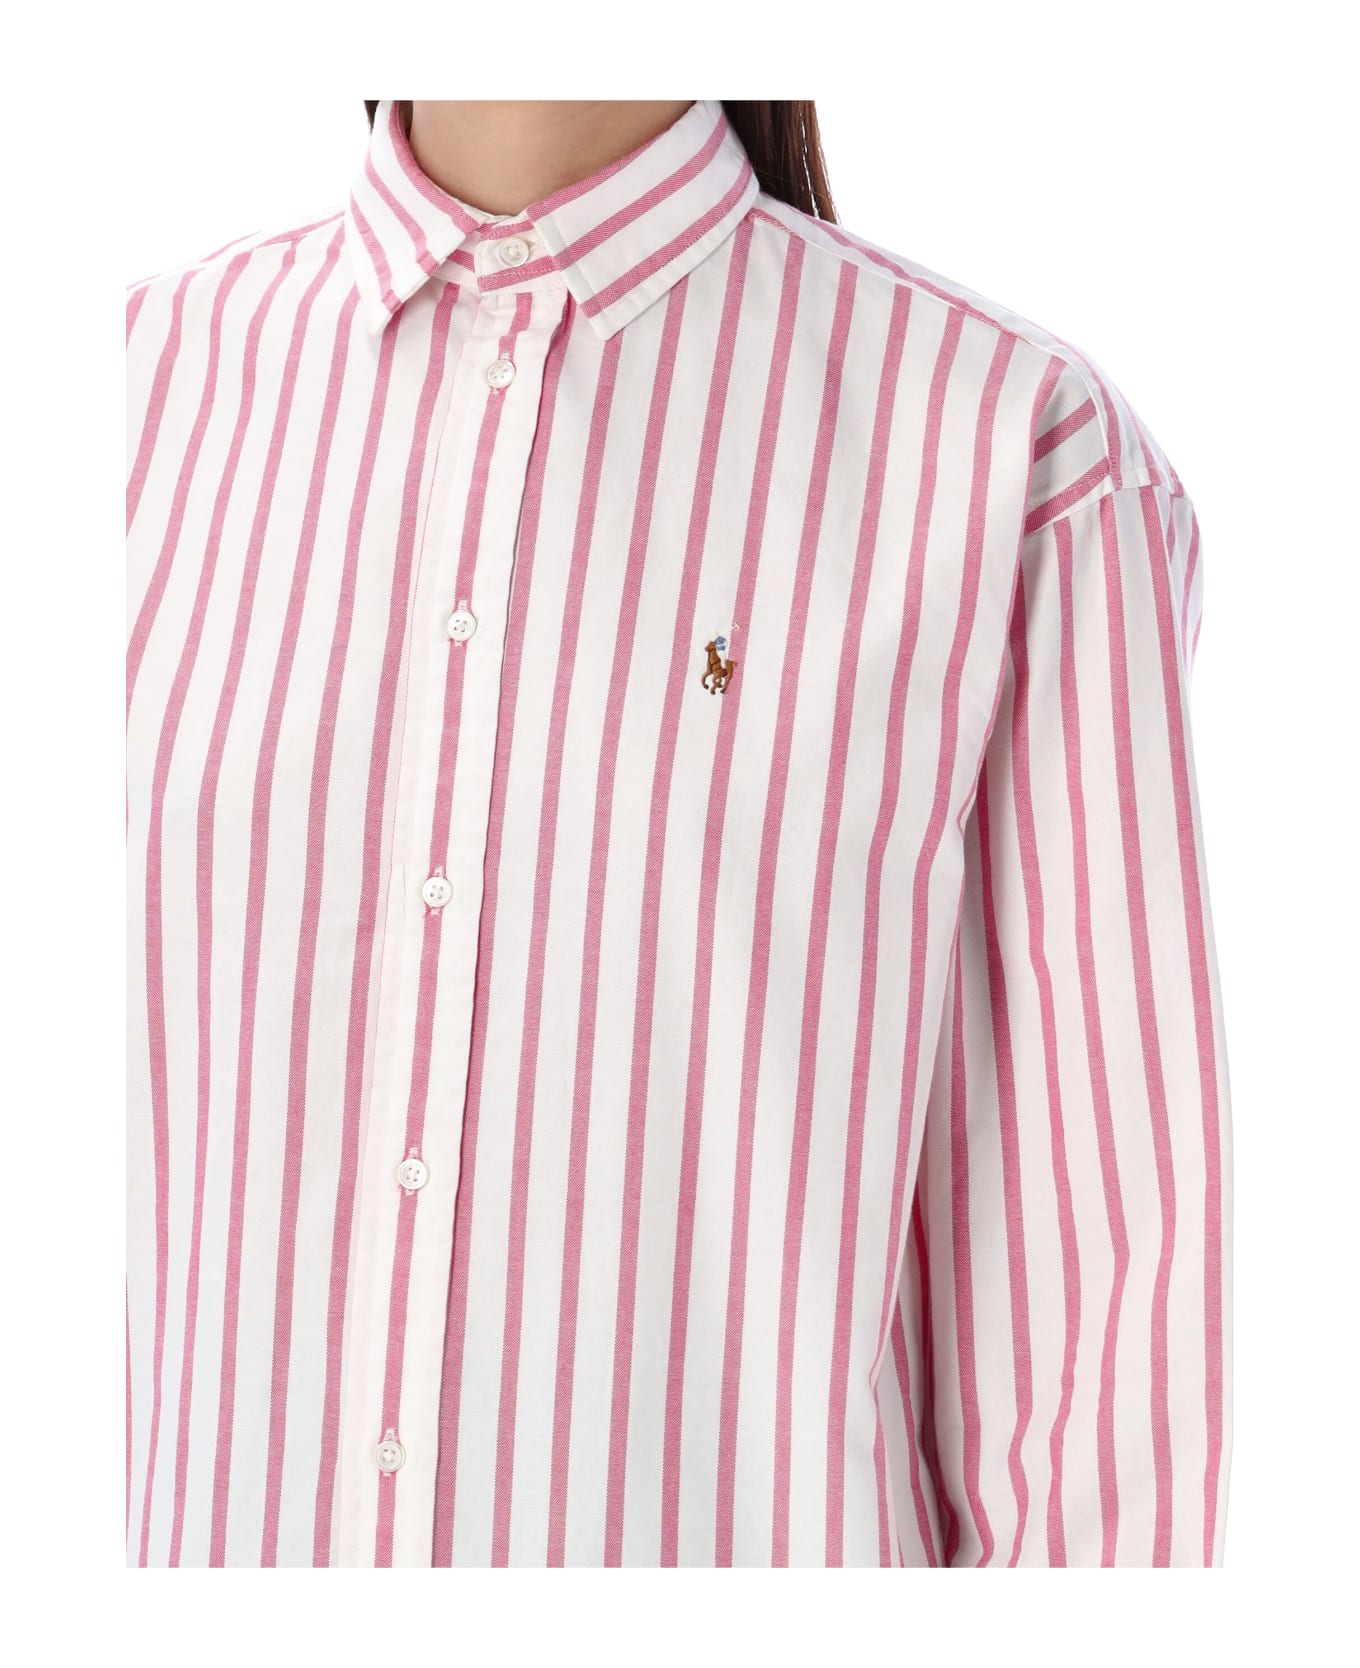 Polo Ralph Lauren Striped Oxford Shirt - PINK/WHITE STRIPES